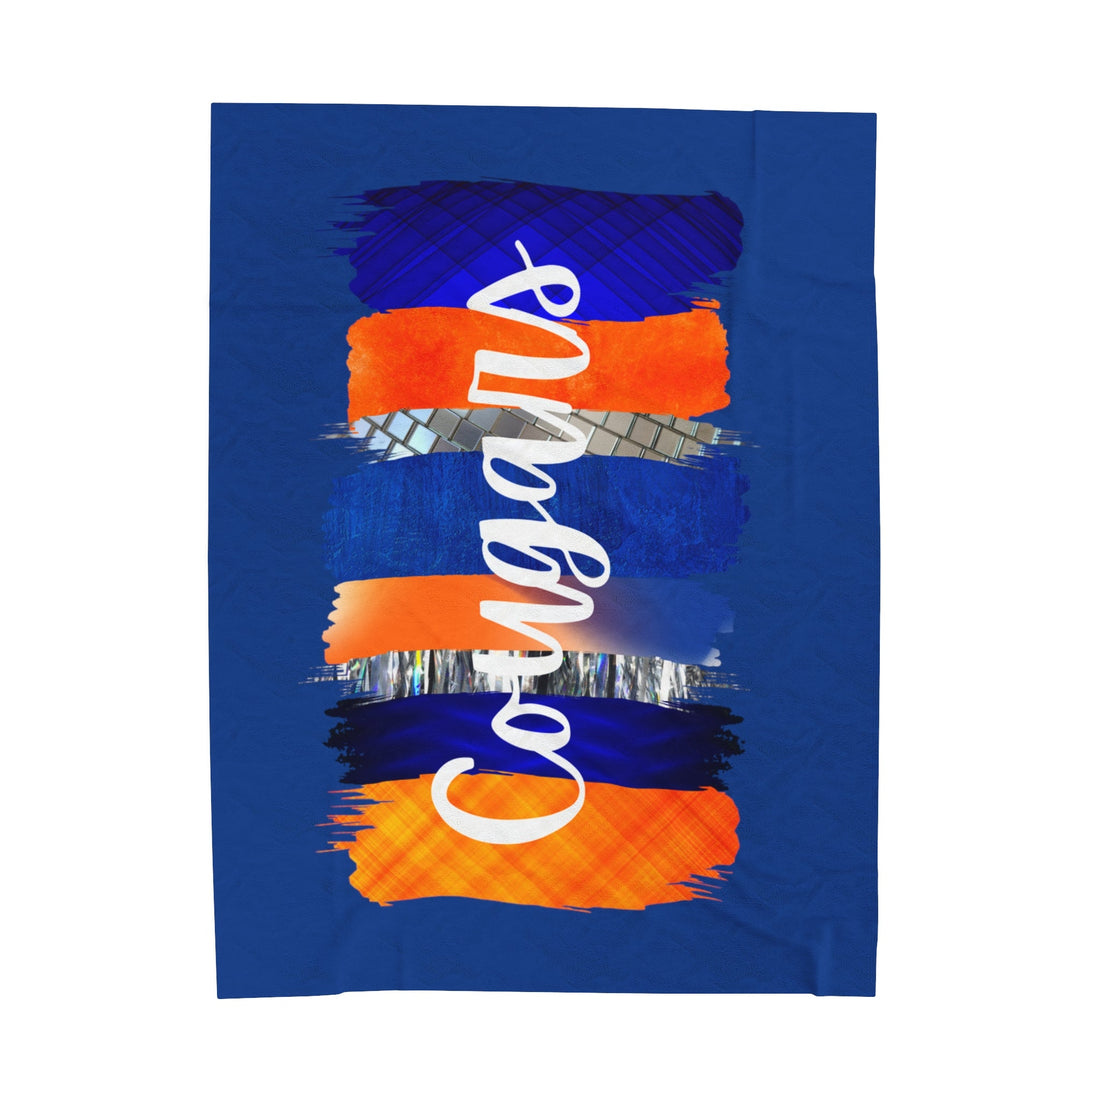 Otis Cougars Paint Swipes Velveteen Plush Blanket - All Over Prints - Positively Sassy - Otis Cougars Paint Swipes Velveteen Plush Blanket